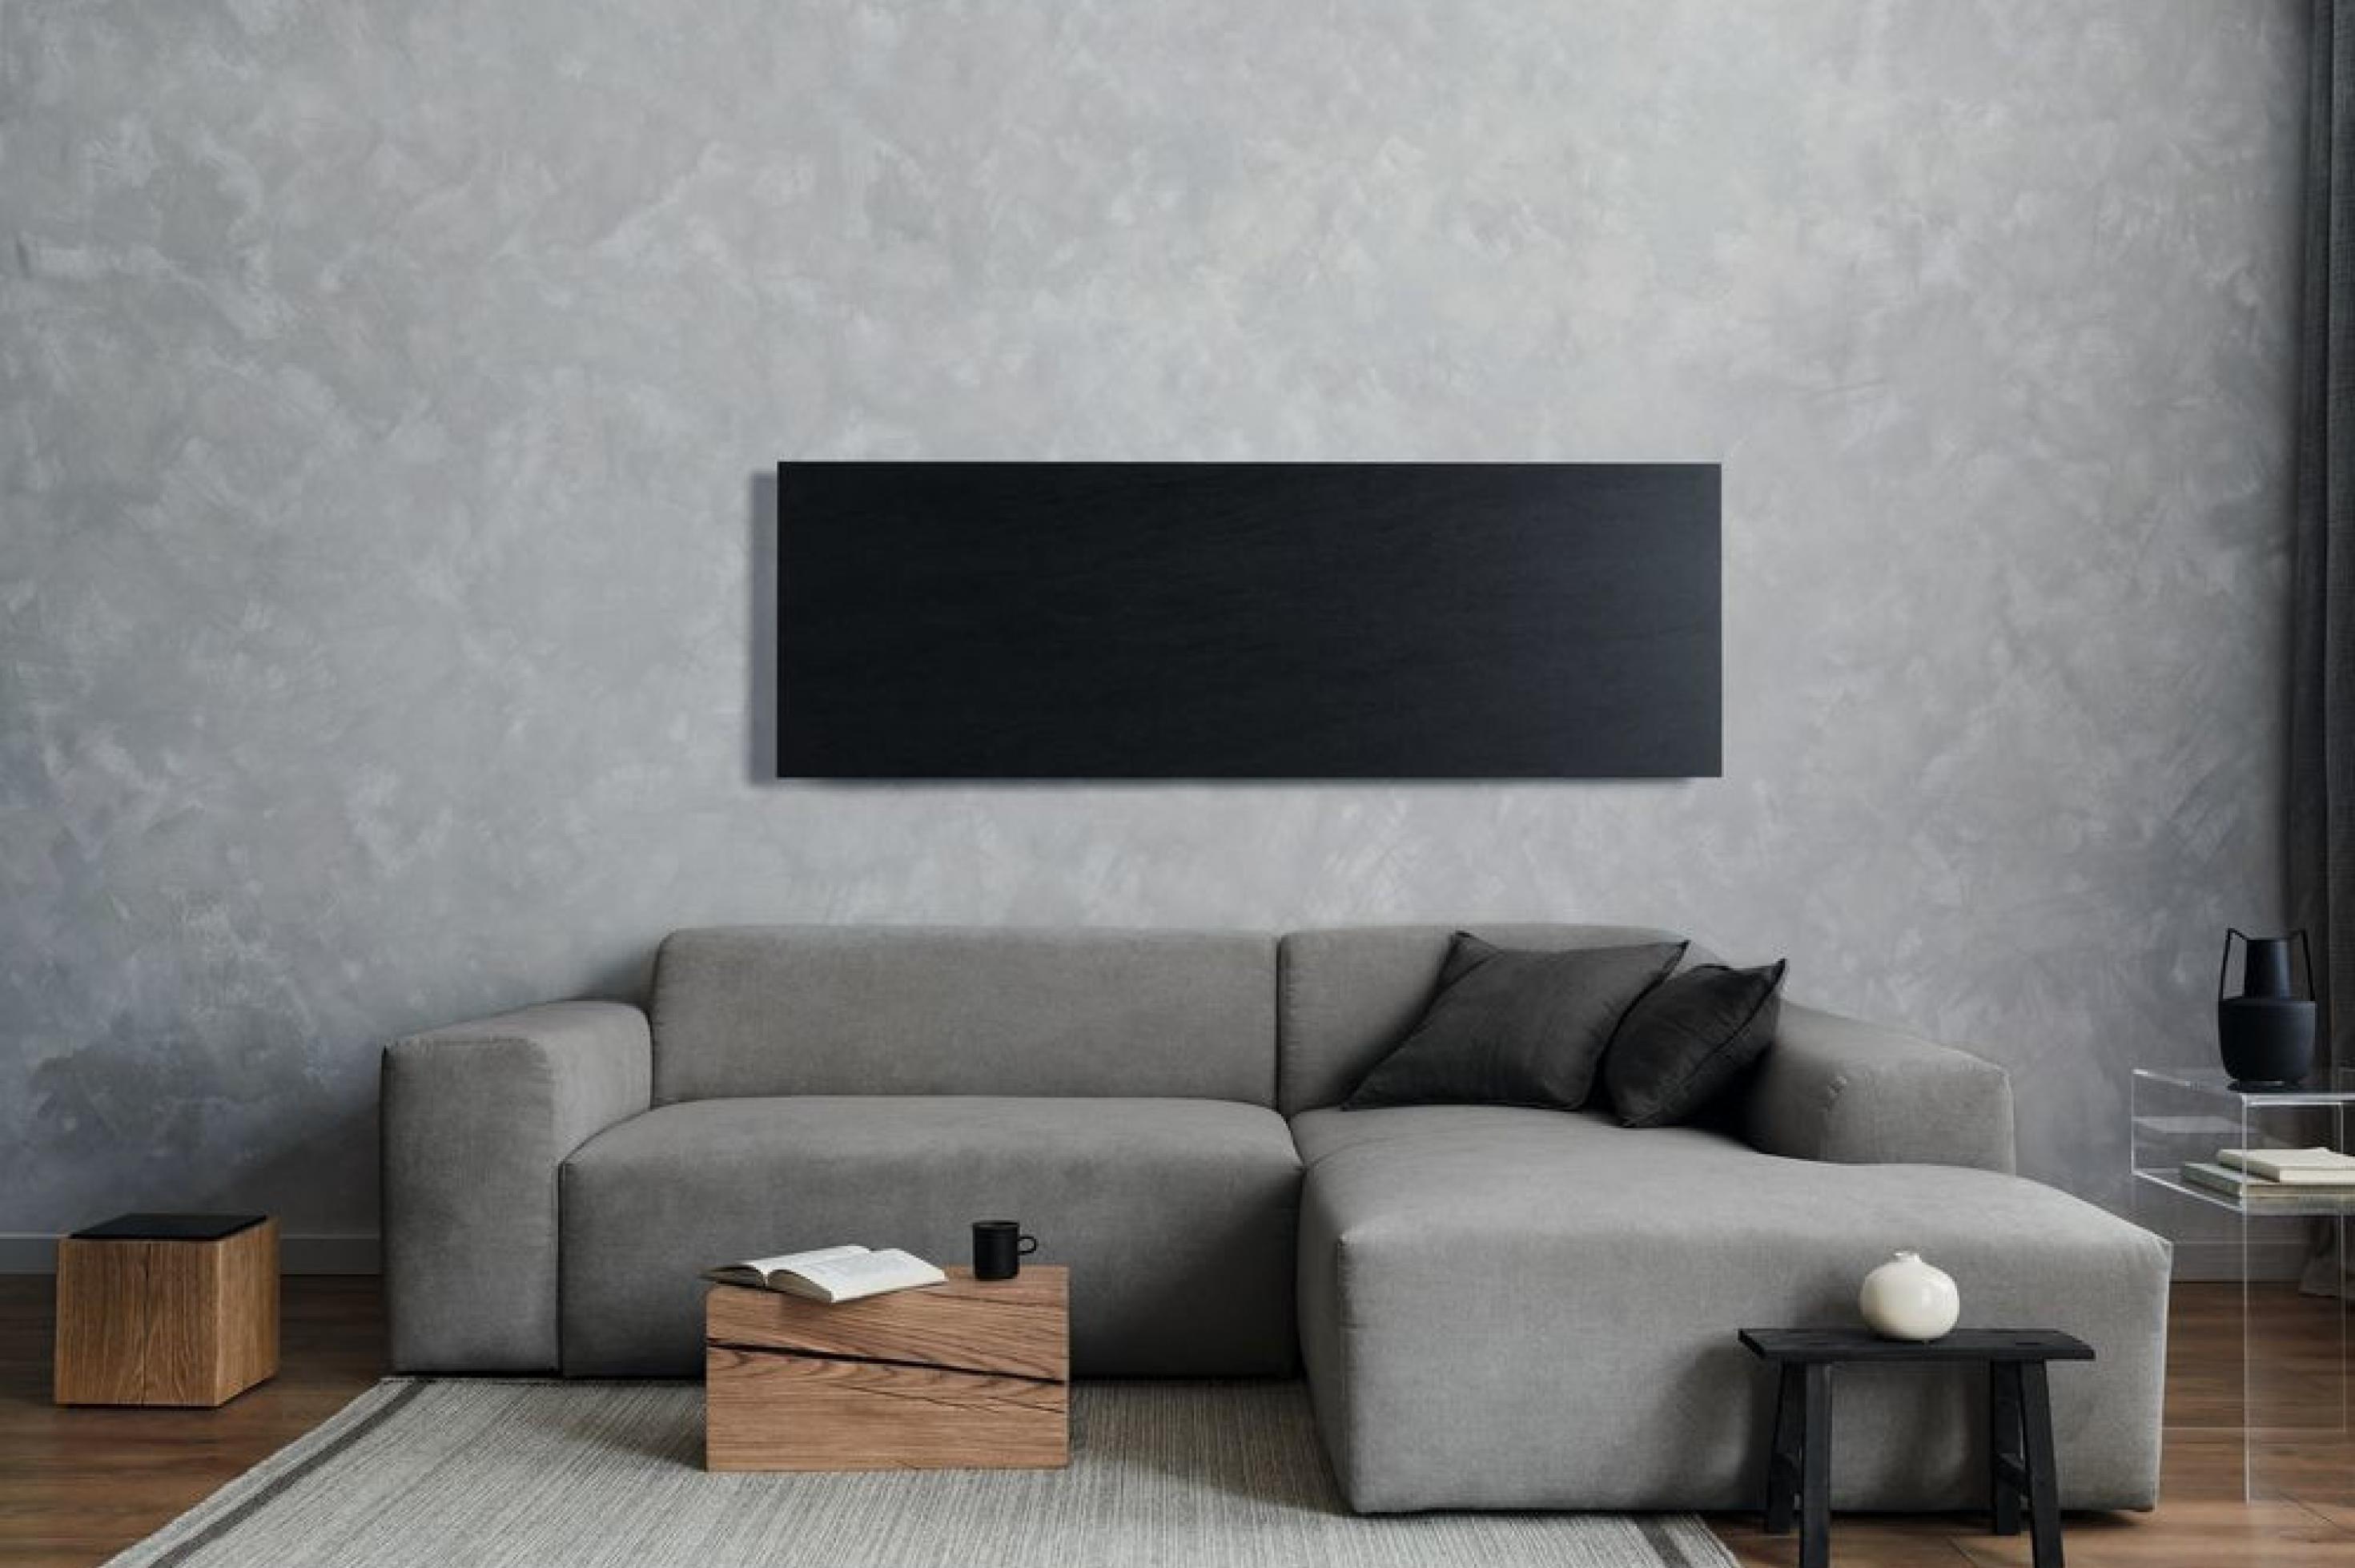 Schwarze Infrarot-Heizplatte, die über einem grauen Sofa an einer grauen Wand installiert ist